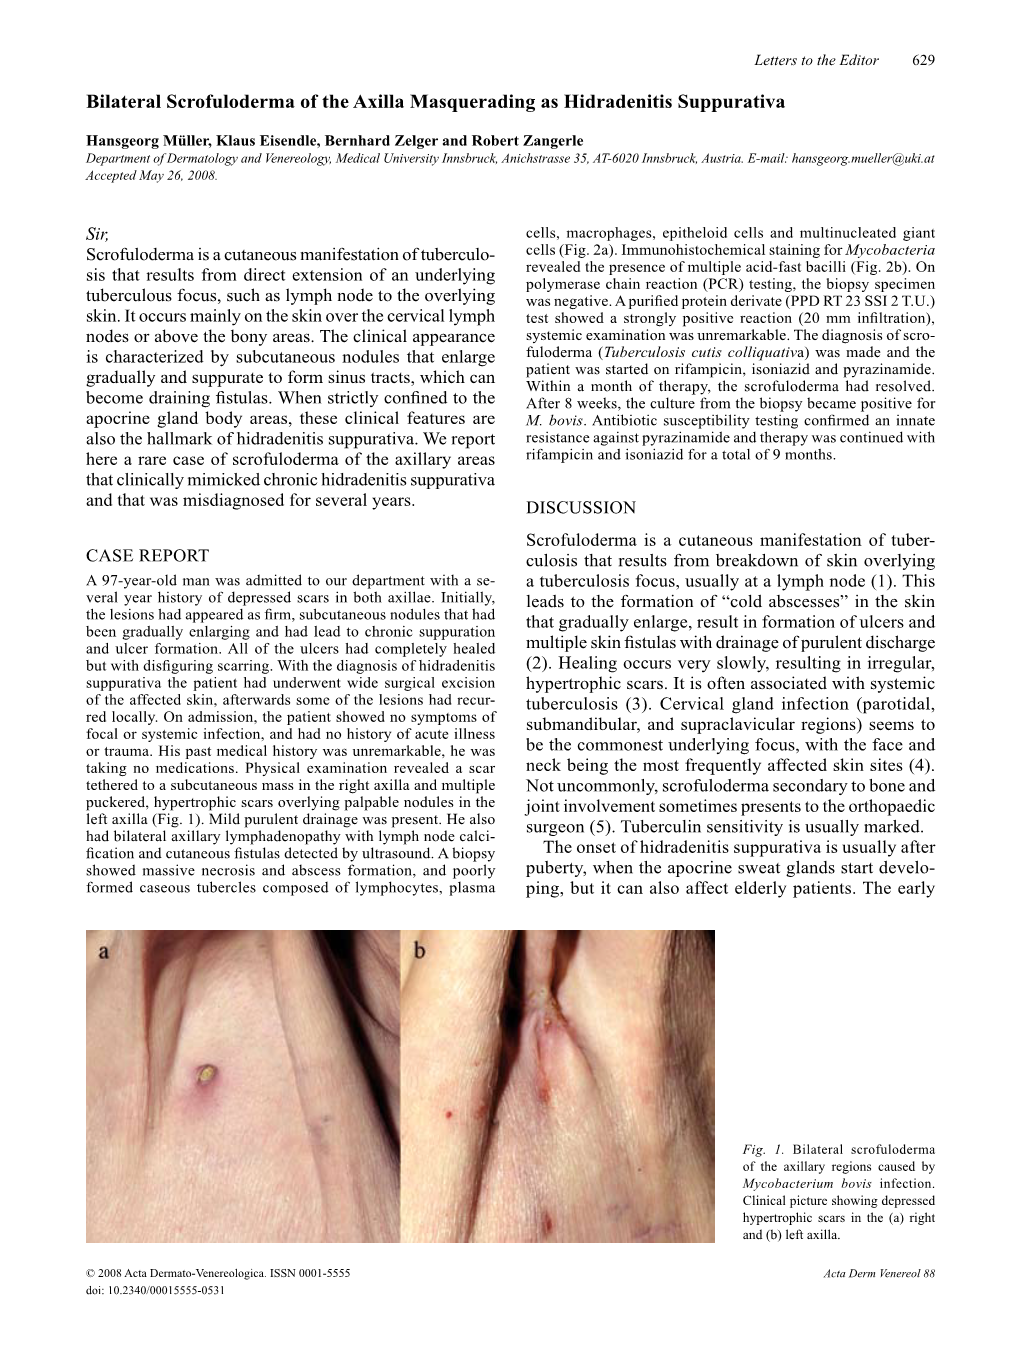 Bilateral Scrofuloderma of the Axilla Masquerading As Hidradenitis Suppurativa